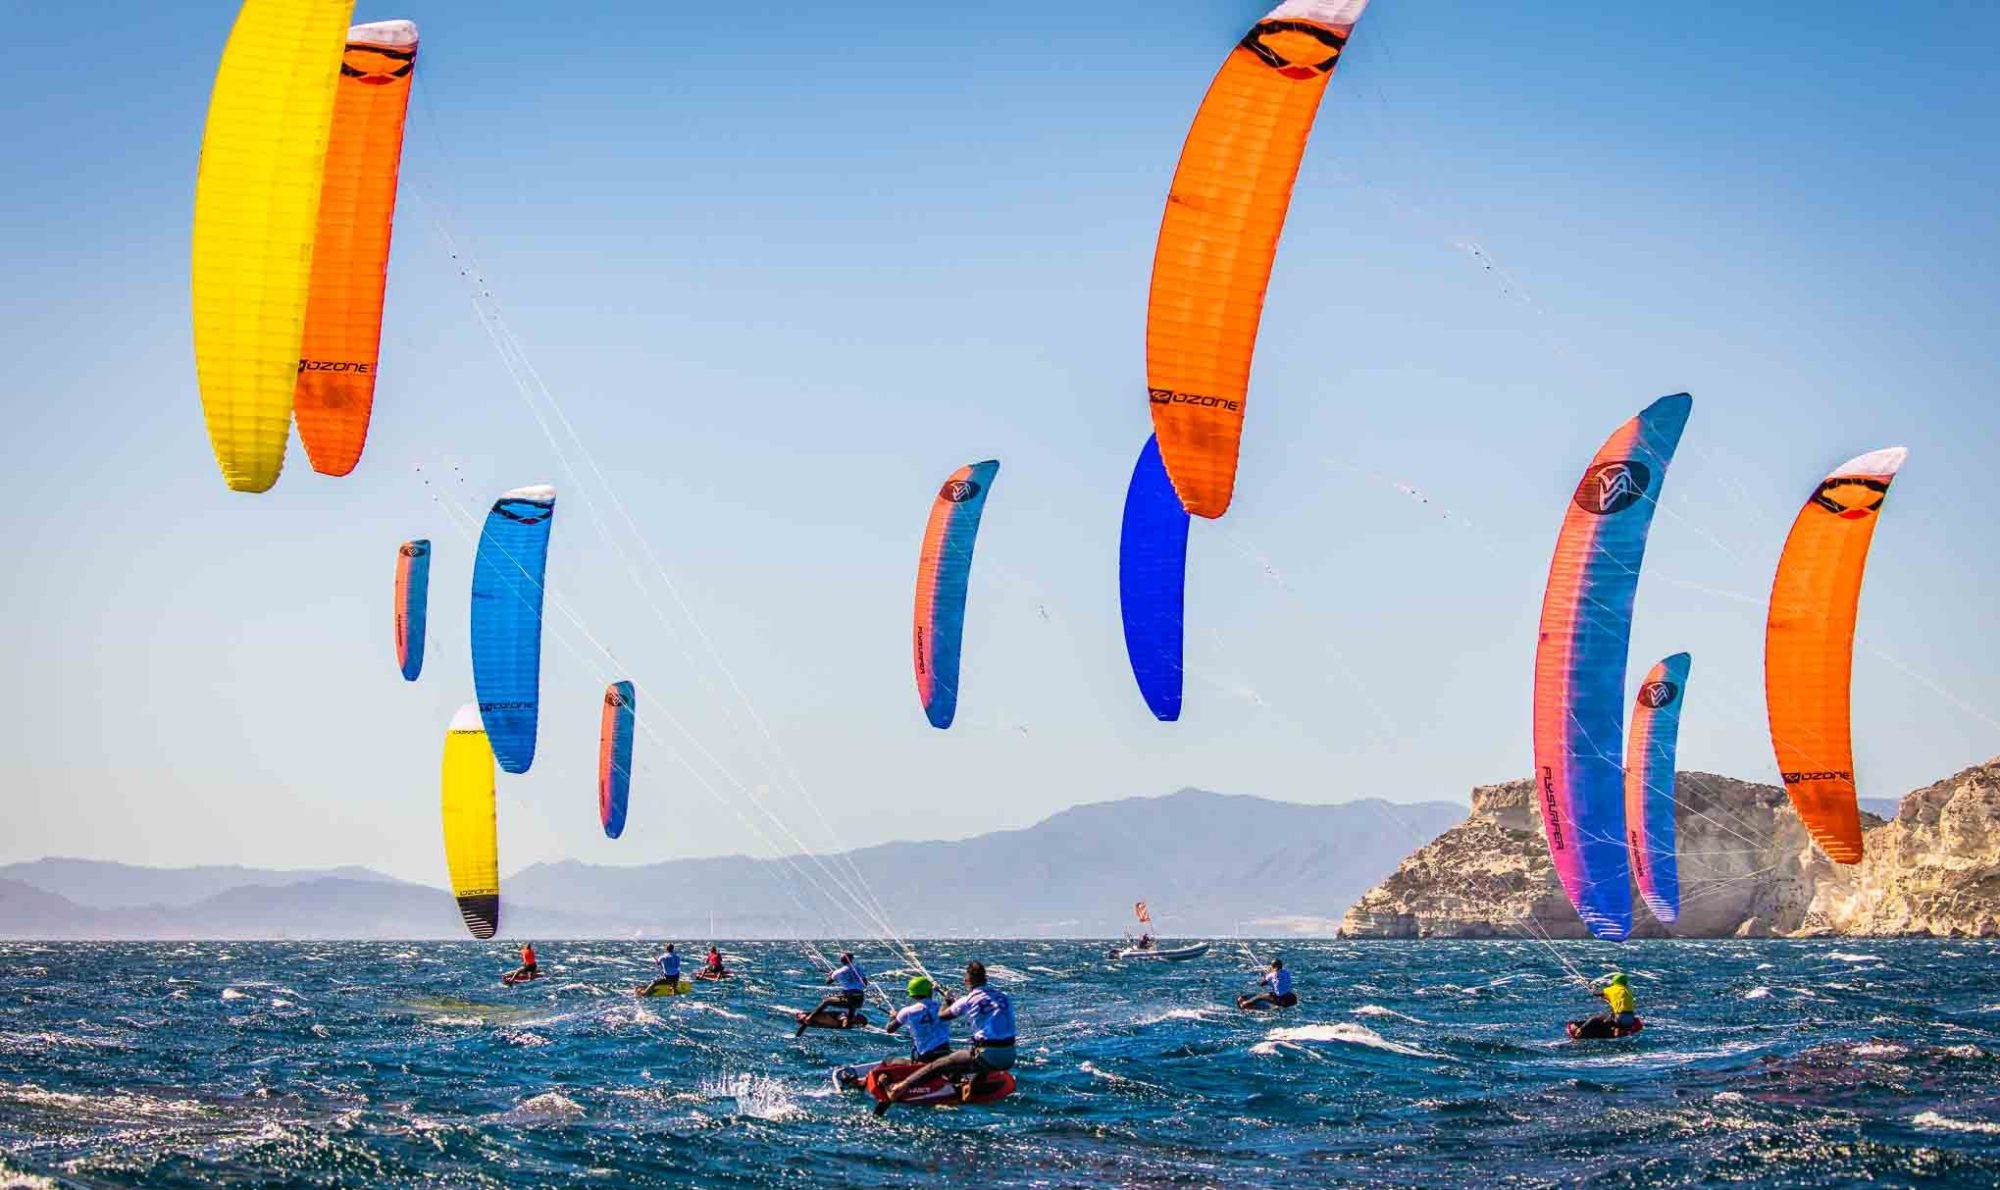 Sardinia Kitesurfing Spots: Cagliari, Punta Trettu< Villasimius, Chia, Porto Botte, Porto Pollo, San teodoro, Badesi: Discover the best kite beaches in Sardinia